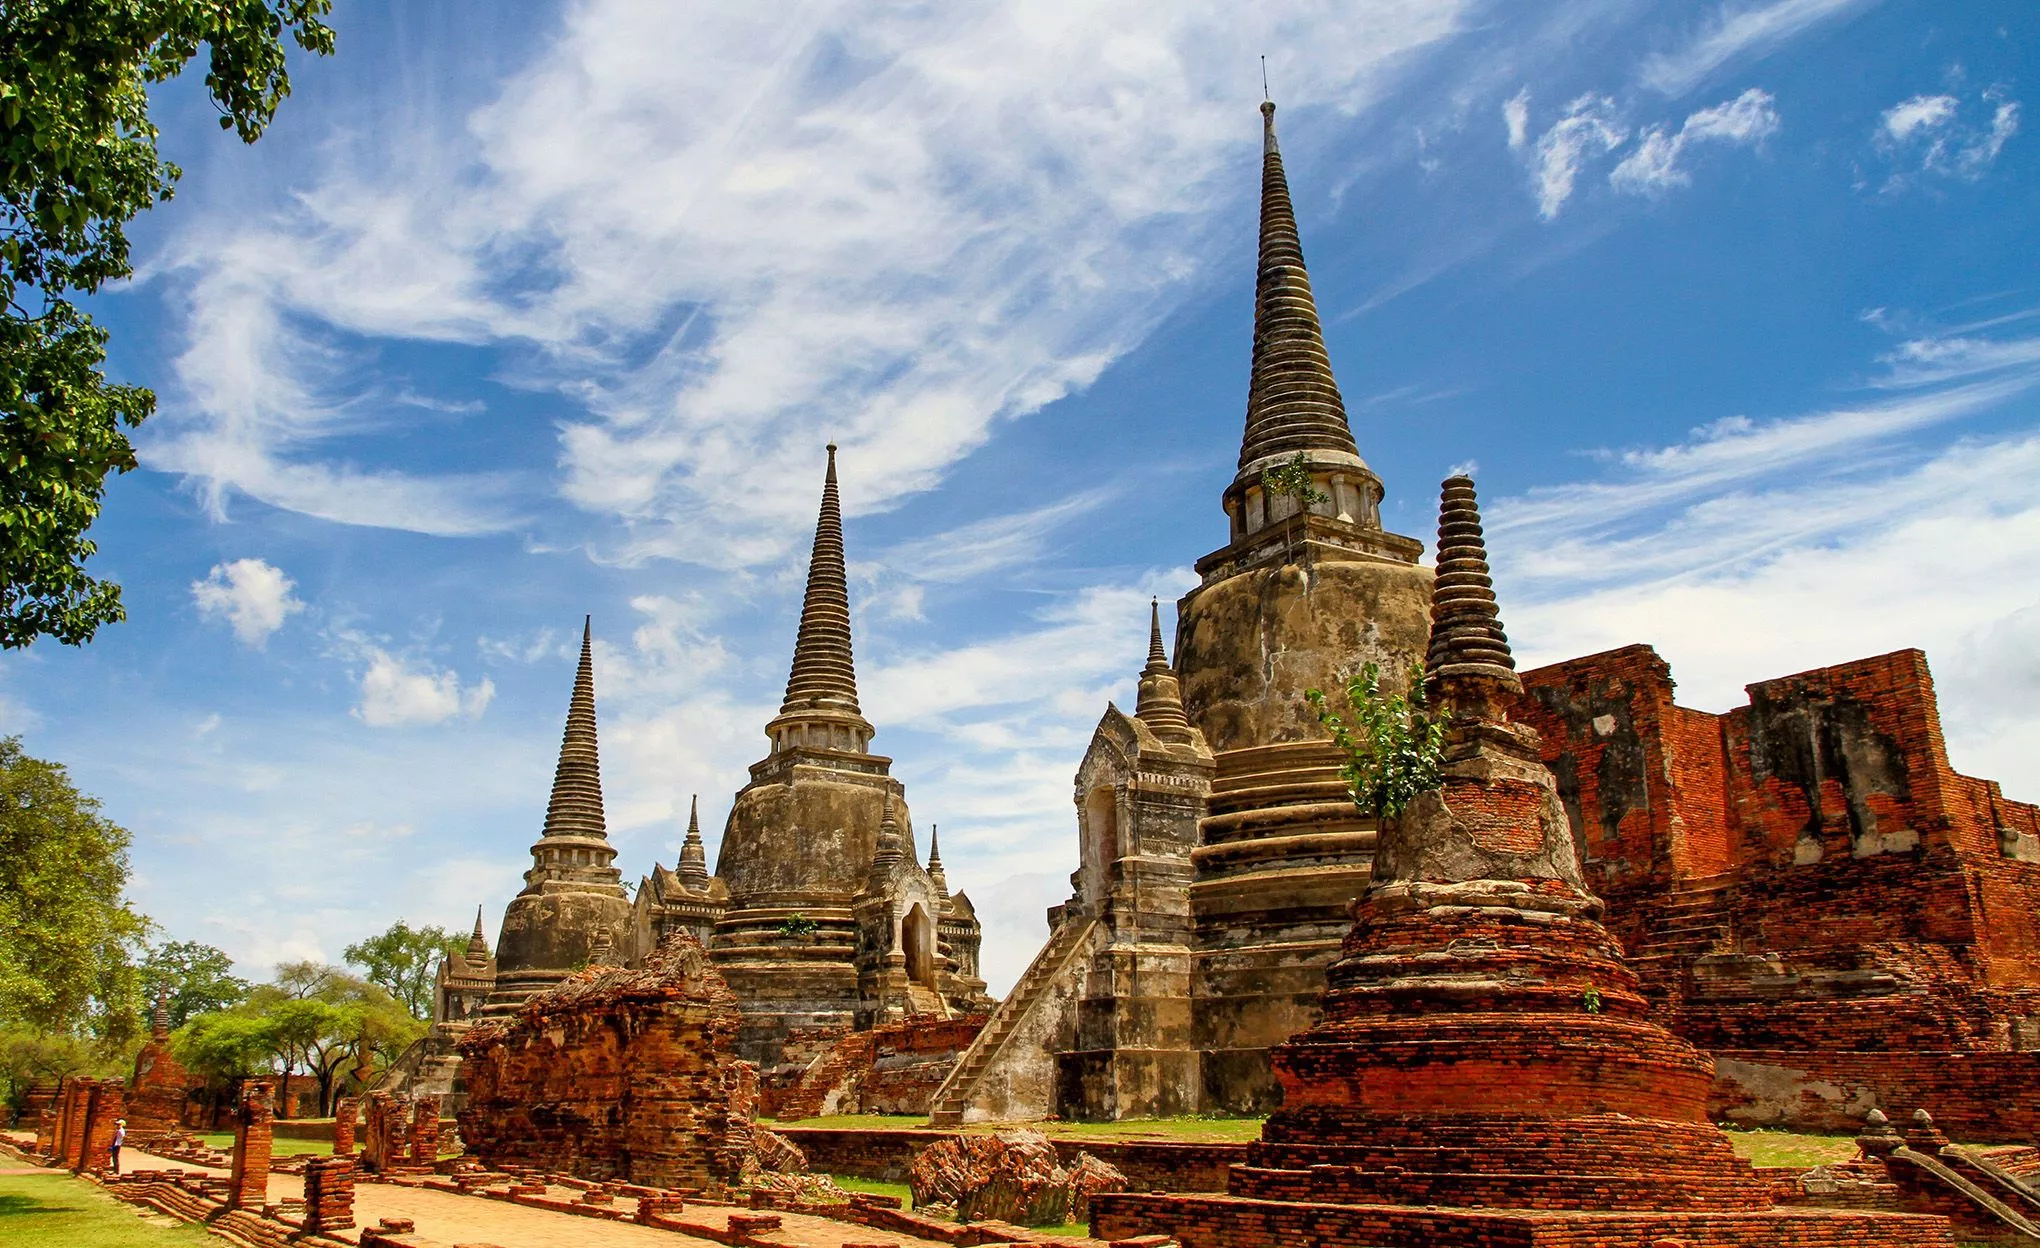 33 Monarchen regierten in Ayutthaya vor seiner Zerstörung 1767. Heute sind die Überreste des königlichen Tempels – Wat Phra Si Sanphet – mit den drei spitzen Chedis das Wahrzeichen der Hauptstadt von einst